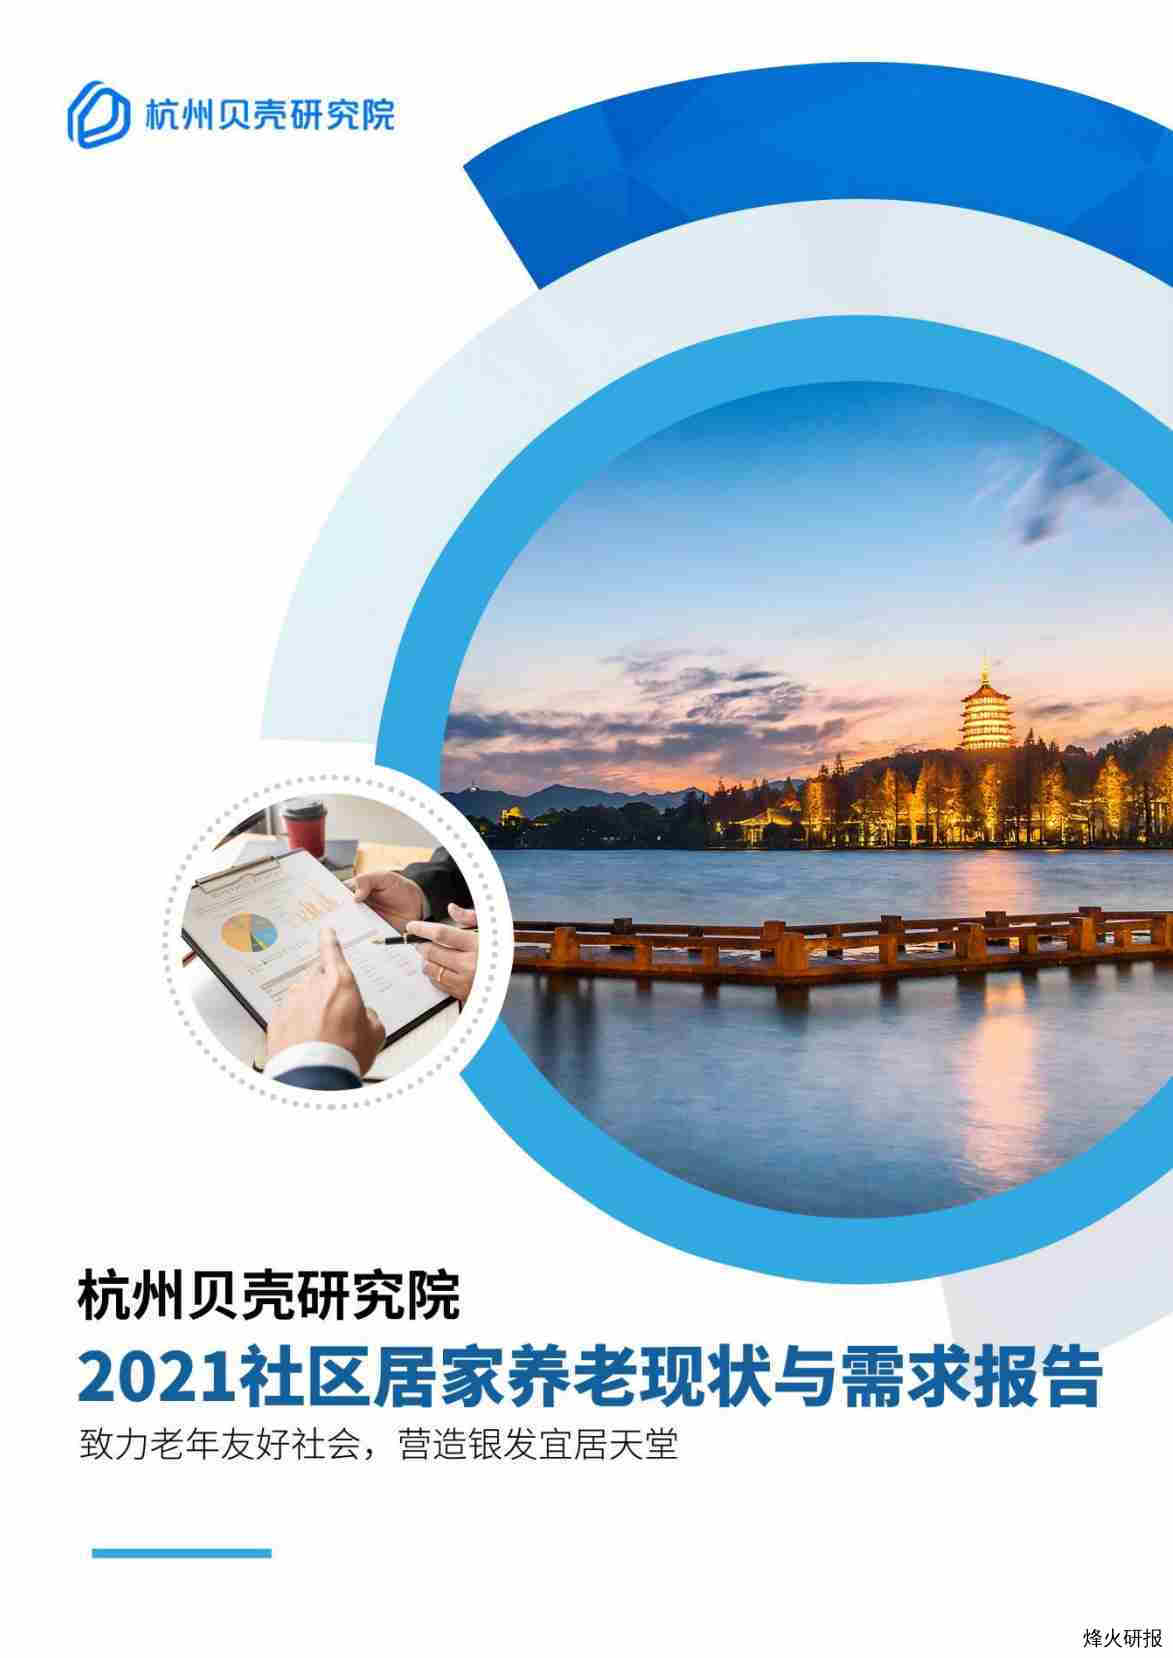 【贝壳研究院】杭州2021社区居家养老现状与需求报告——贝壳研究院.pdf-第一页